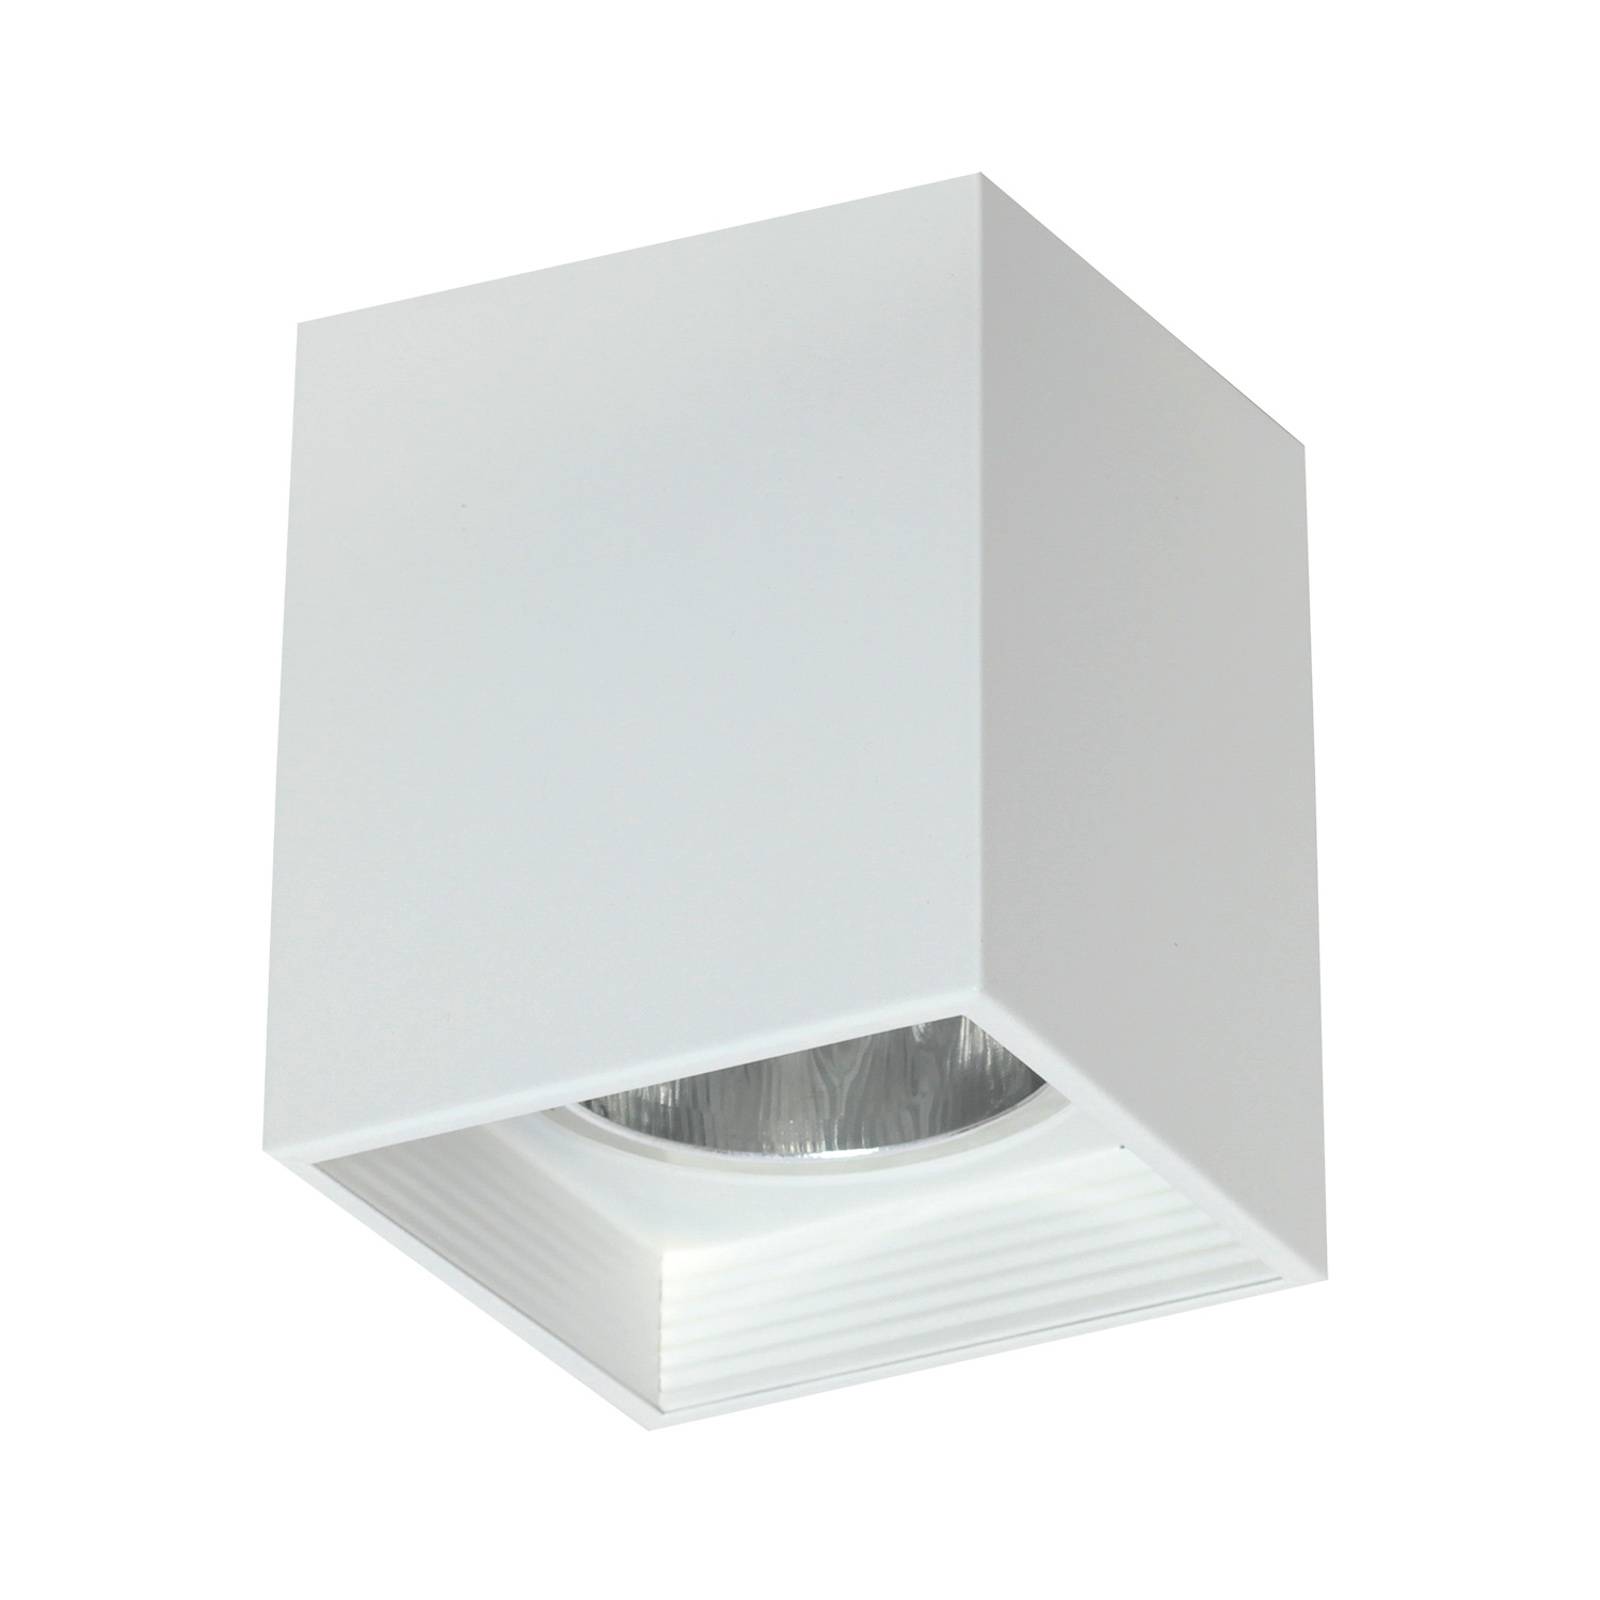 Deckenlampe Downlight square, weiß, Breite 9,2 cm